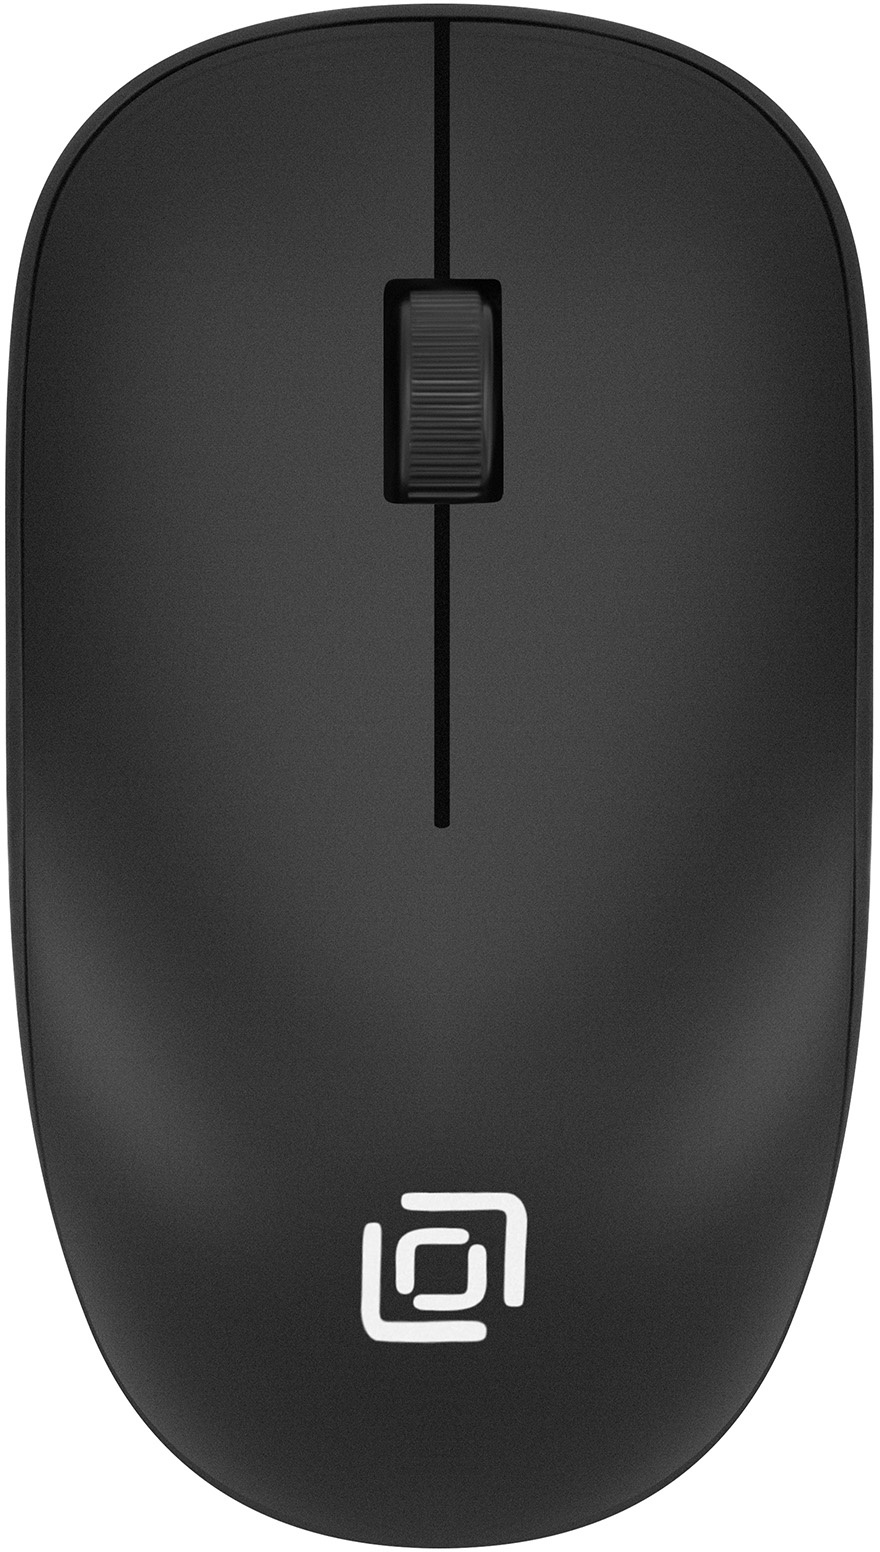 Клавиатура+мышь Oklick 230M клав:черный мышь:черный USB беспроводная